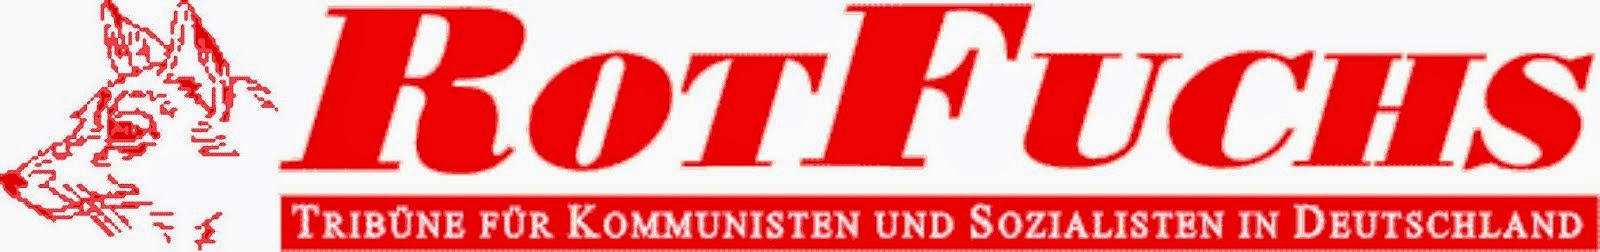 RotFuchs - Tribüne für Kommunisten und Sozialisten in Deutschland